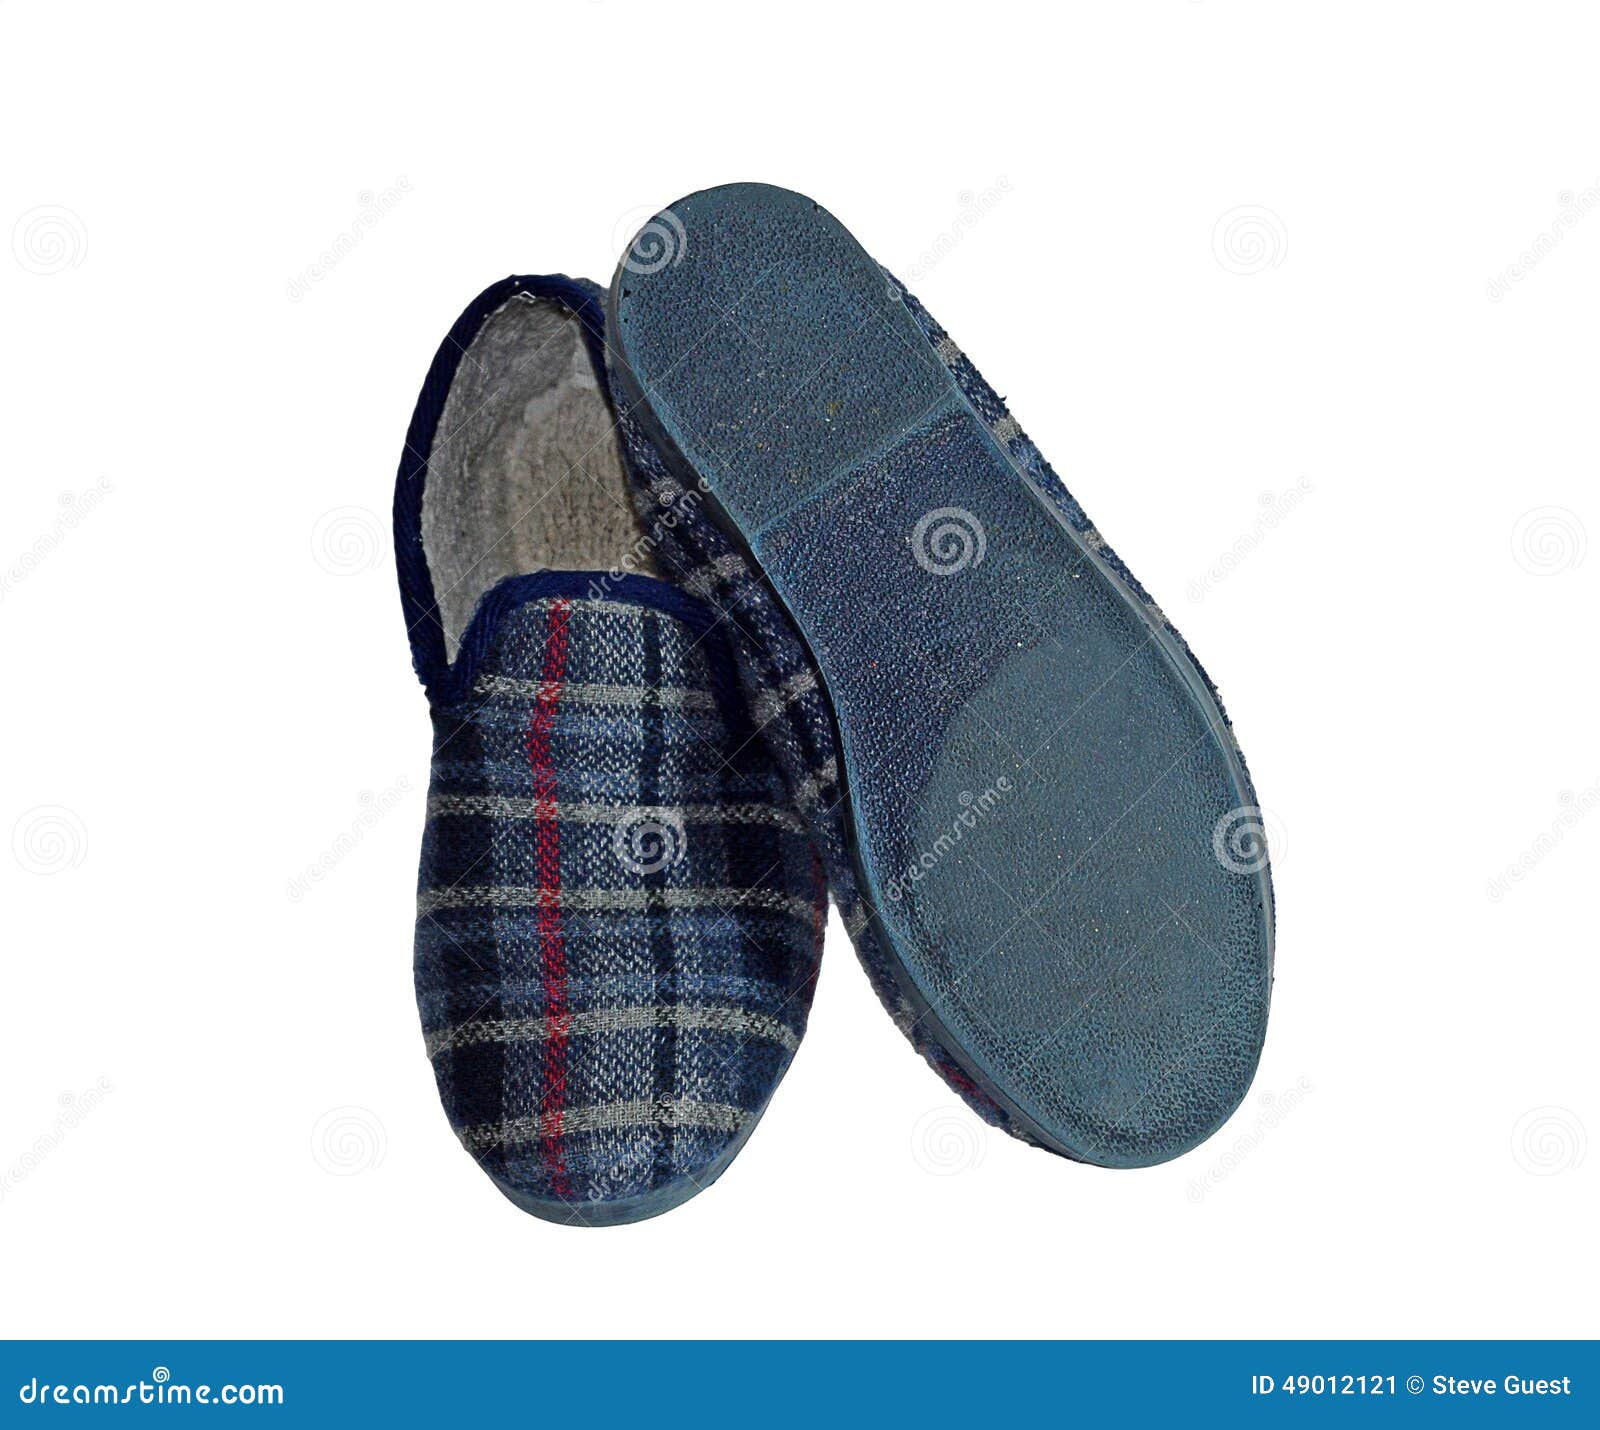 carpet slippers mens